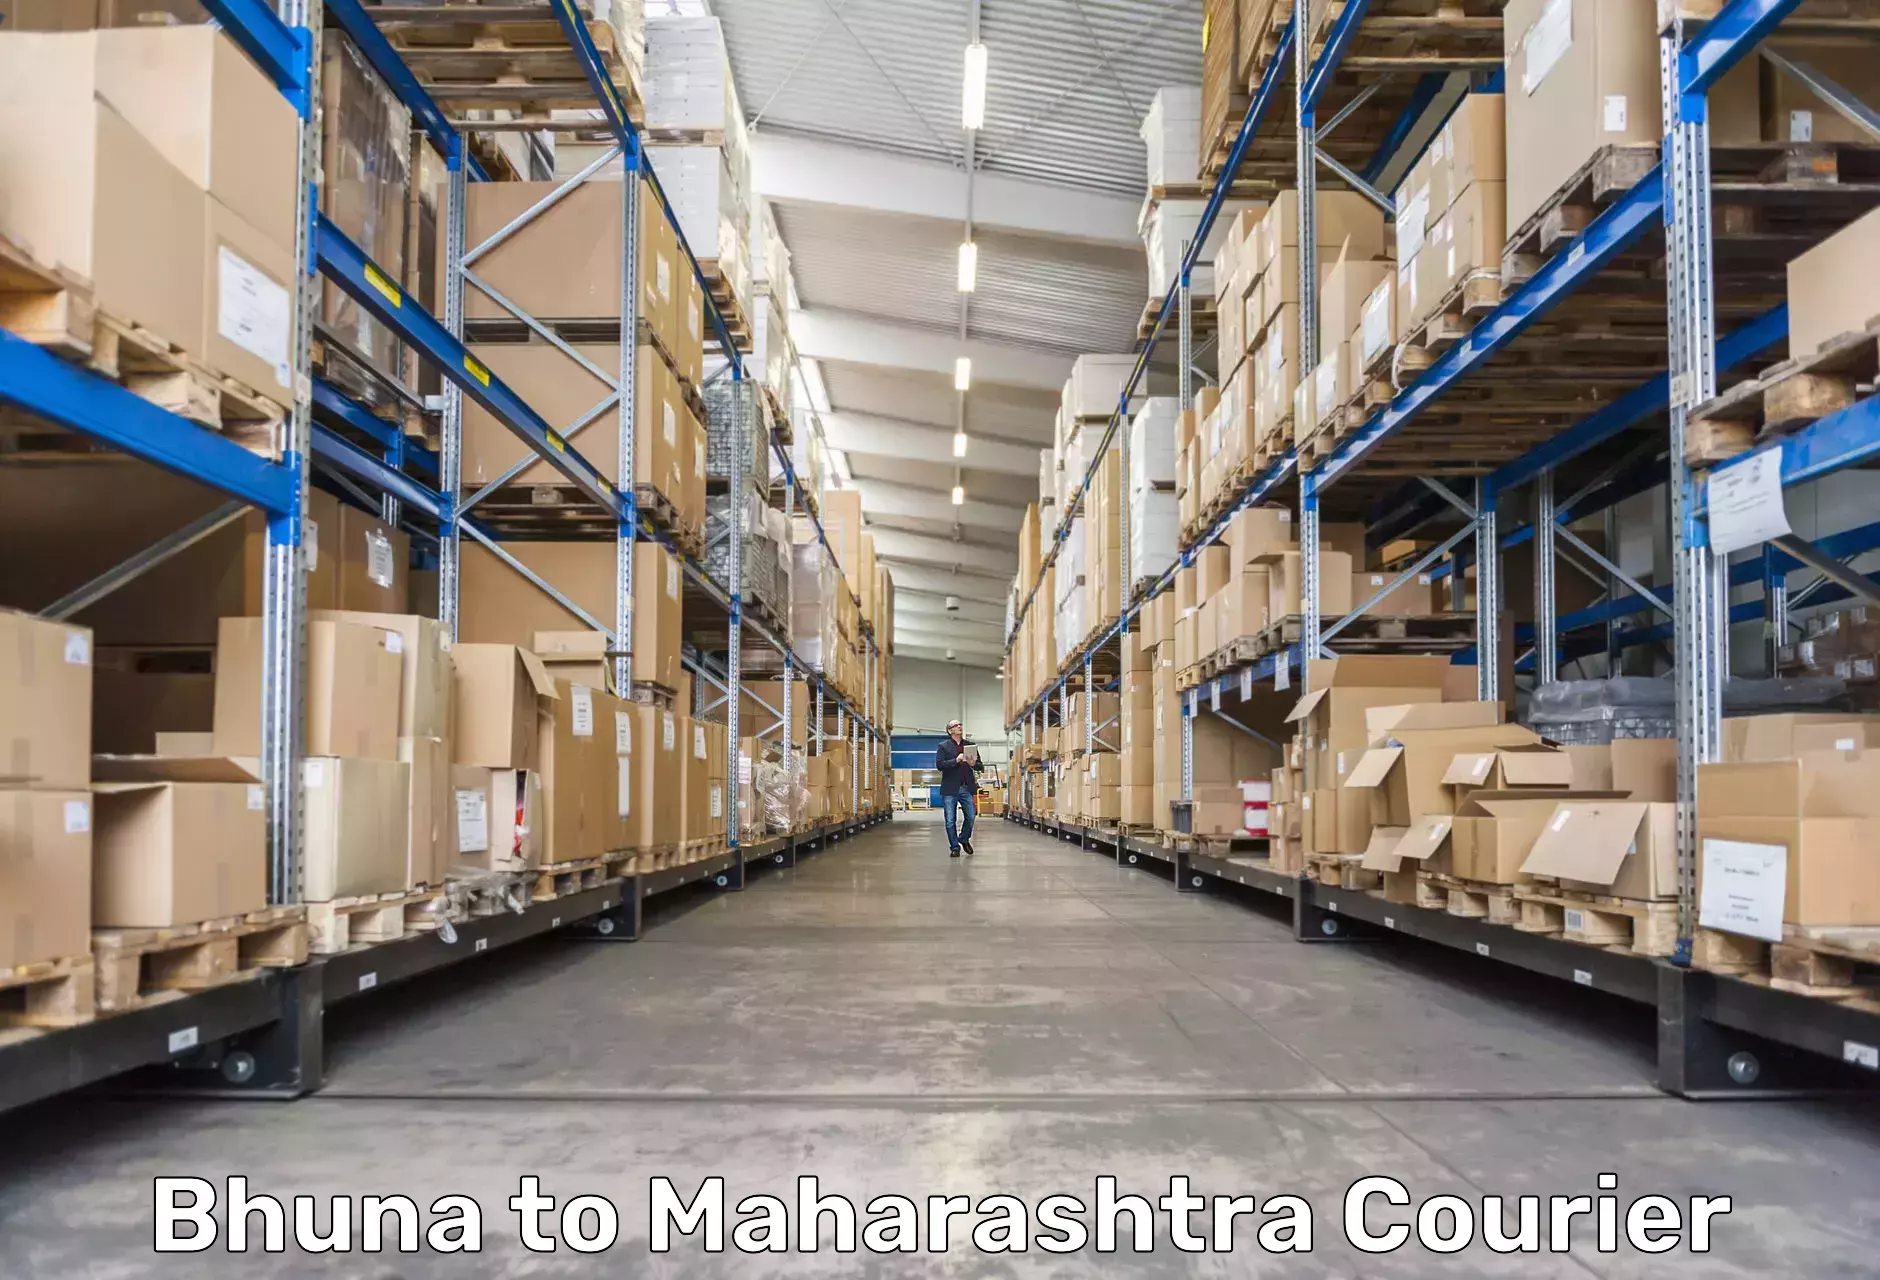 Express courier capabilities Bhuna to Maharashtra